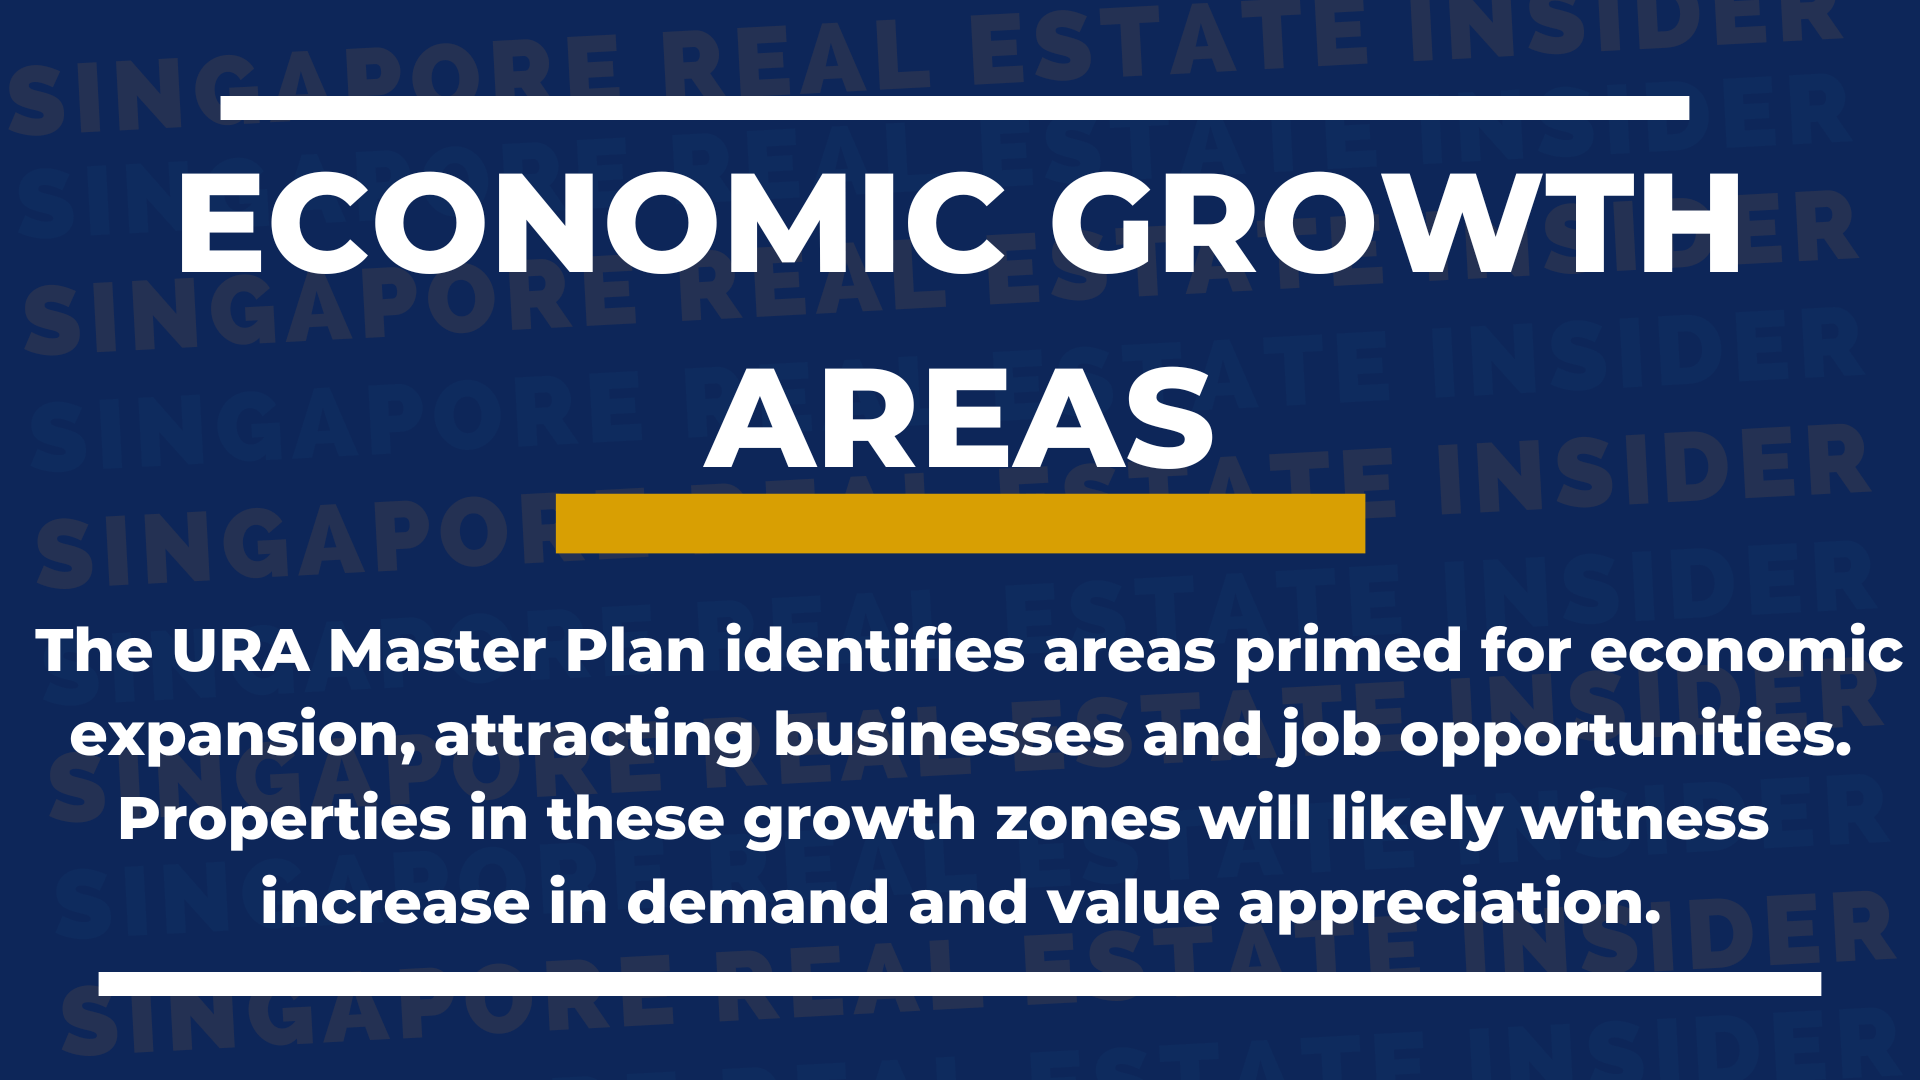 Economic growth areas